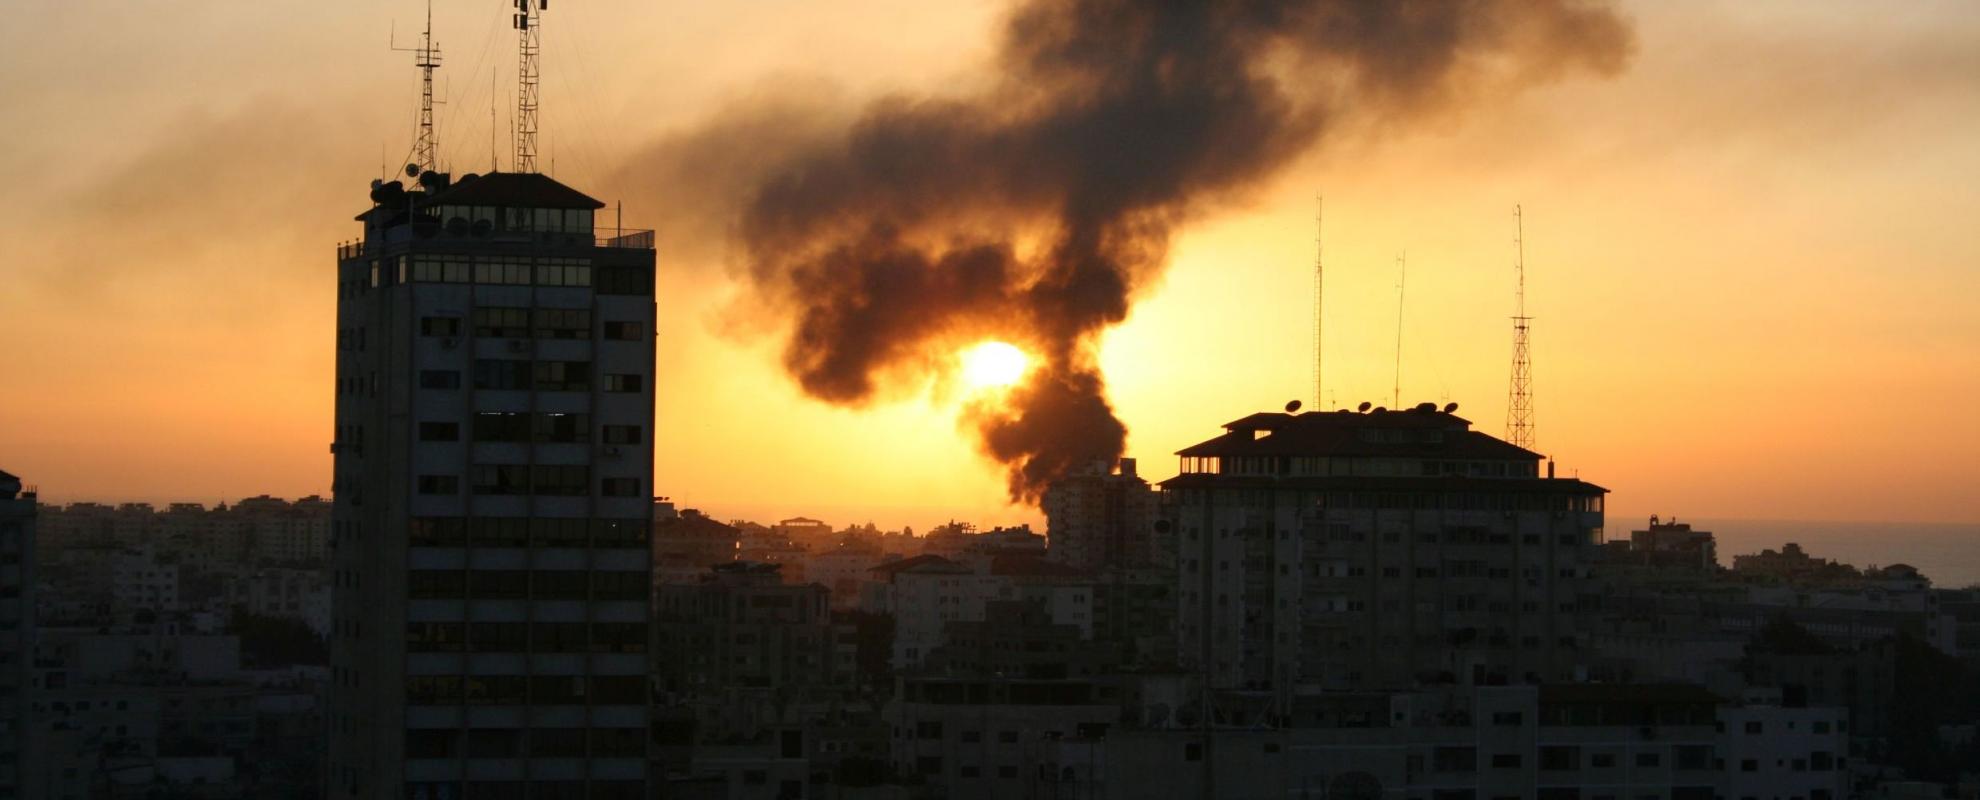 13 jaar van militaire blokkade en geweld laten hun sporen na op de inwoners van Gaza © Al Jazeera English